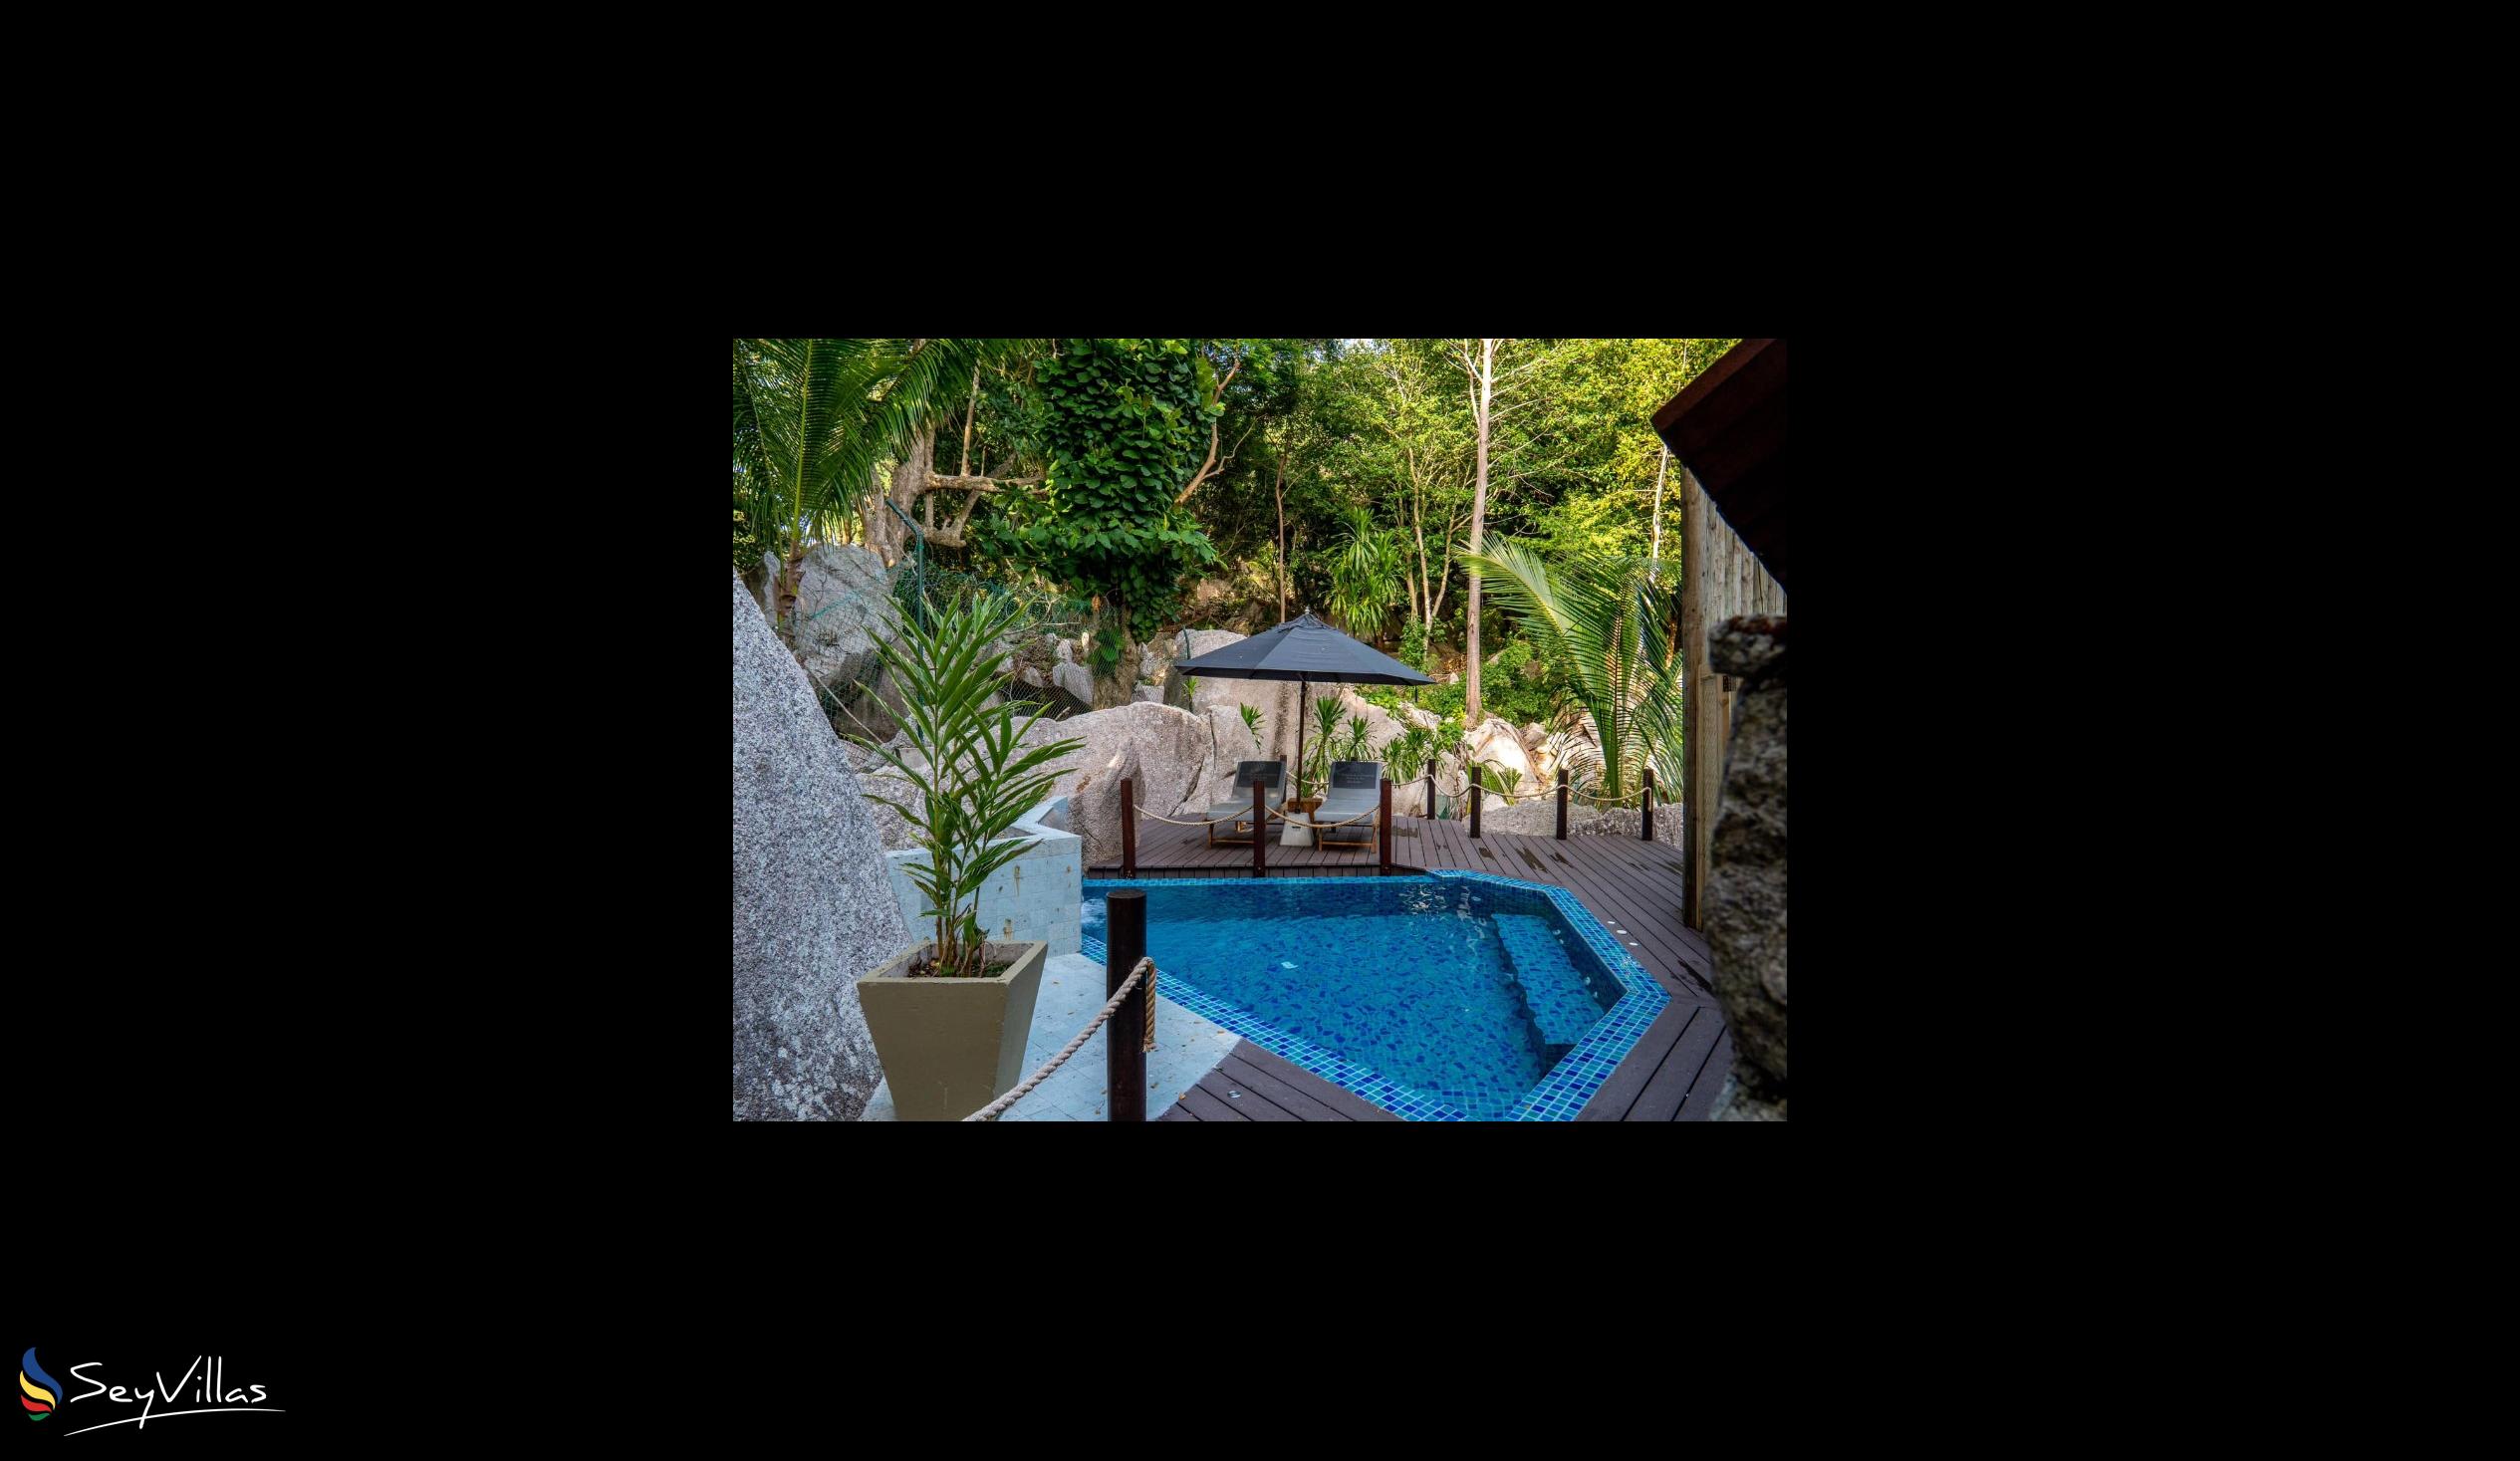 Photo 122: Le Domaine de L'Orangeraie - Villa de Charme (Elégance Superieure) - La Digue (Seychelles)